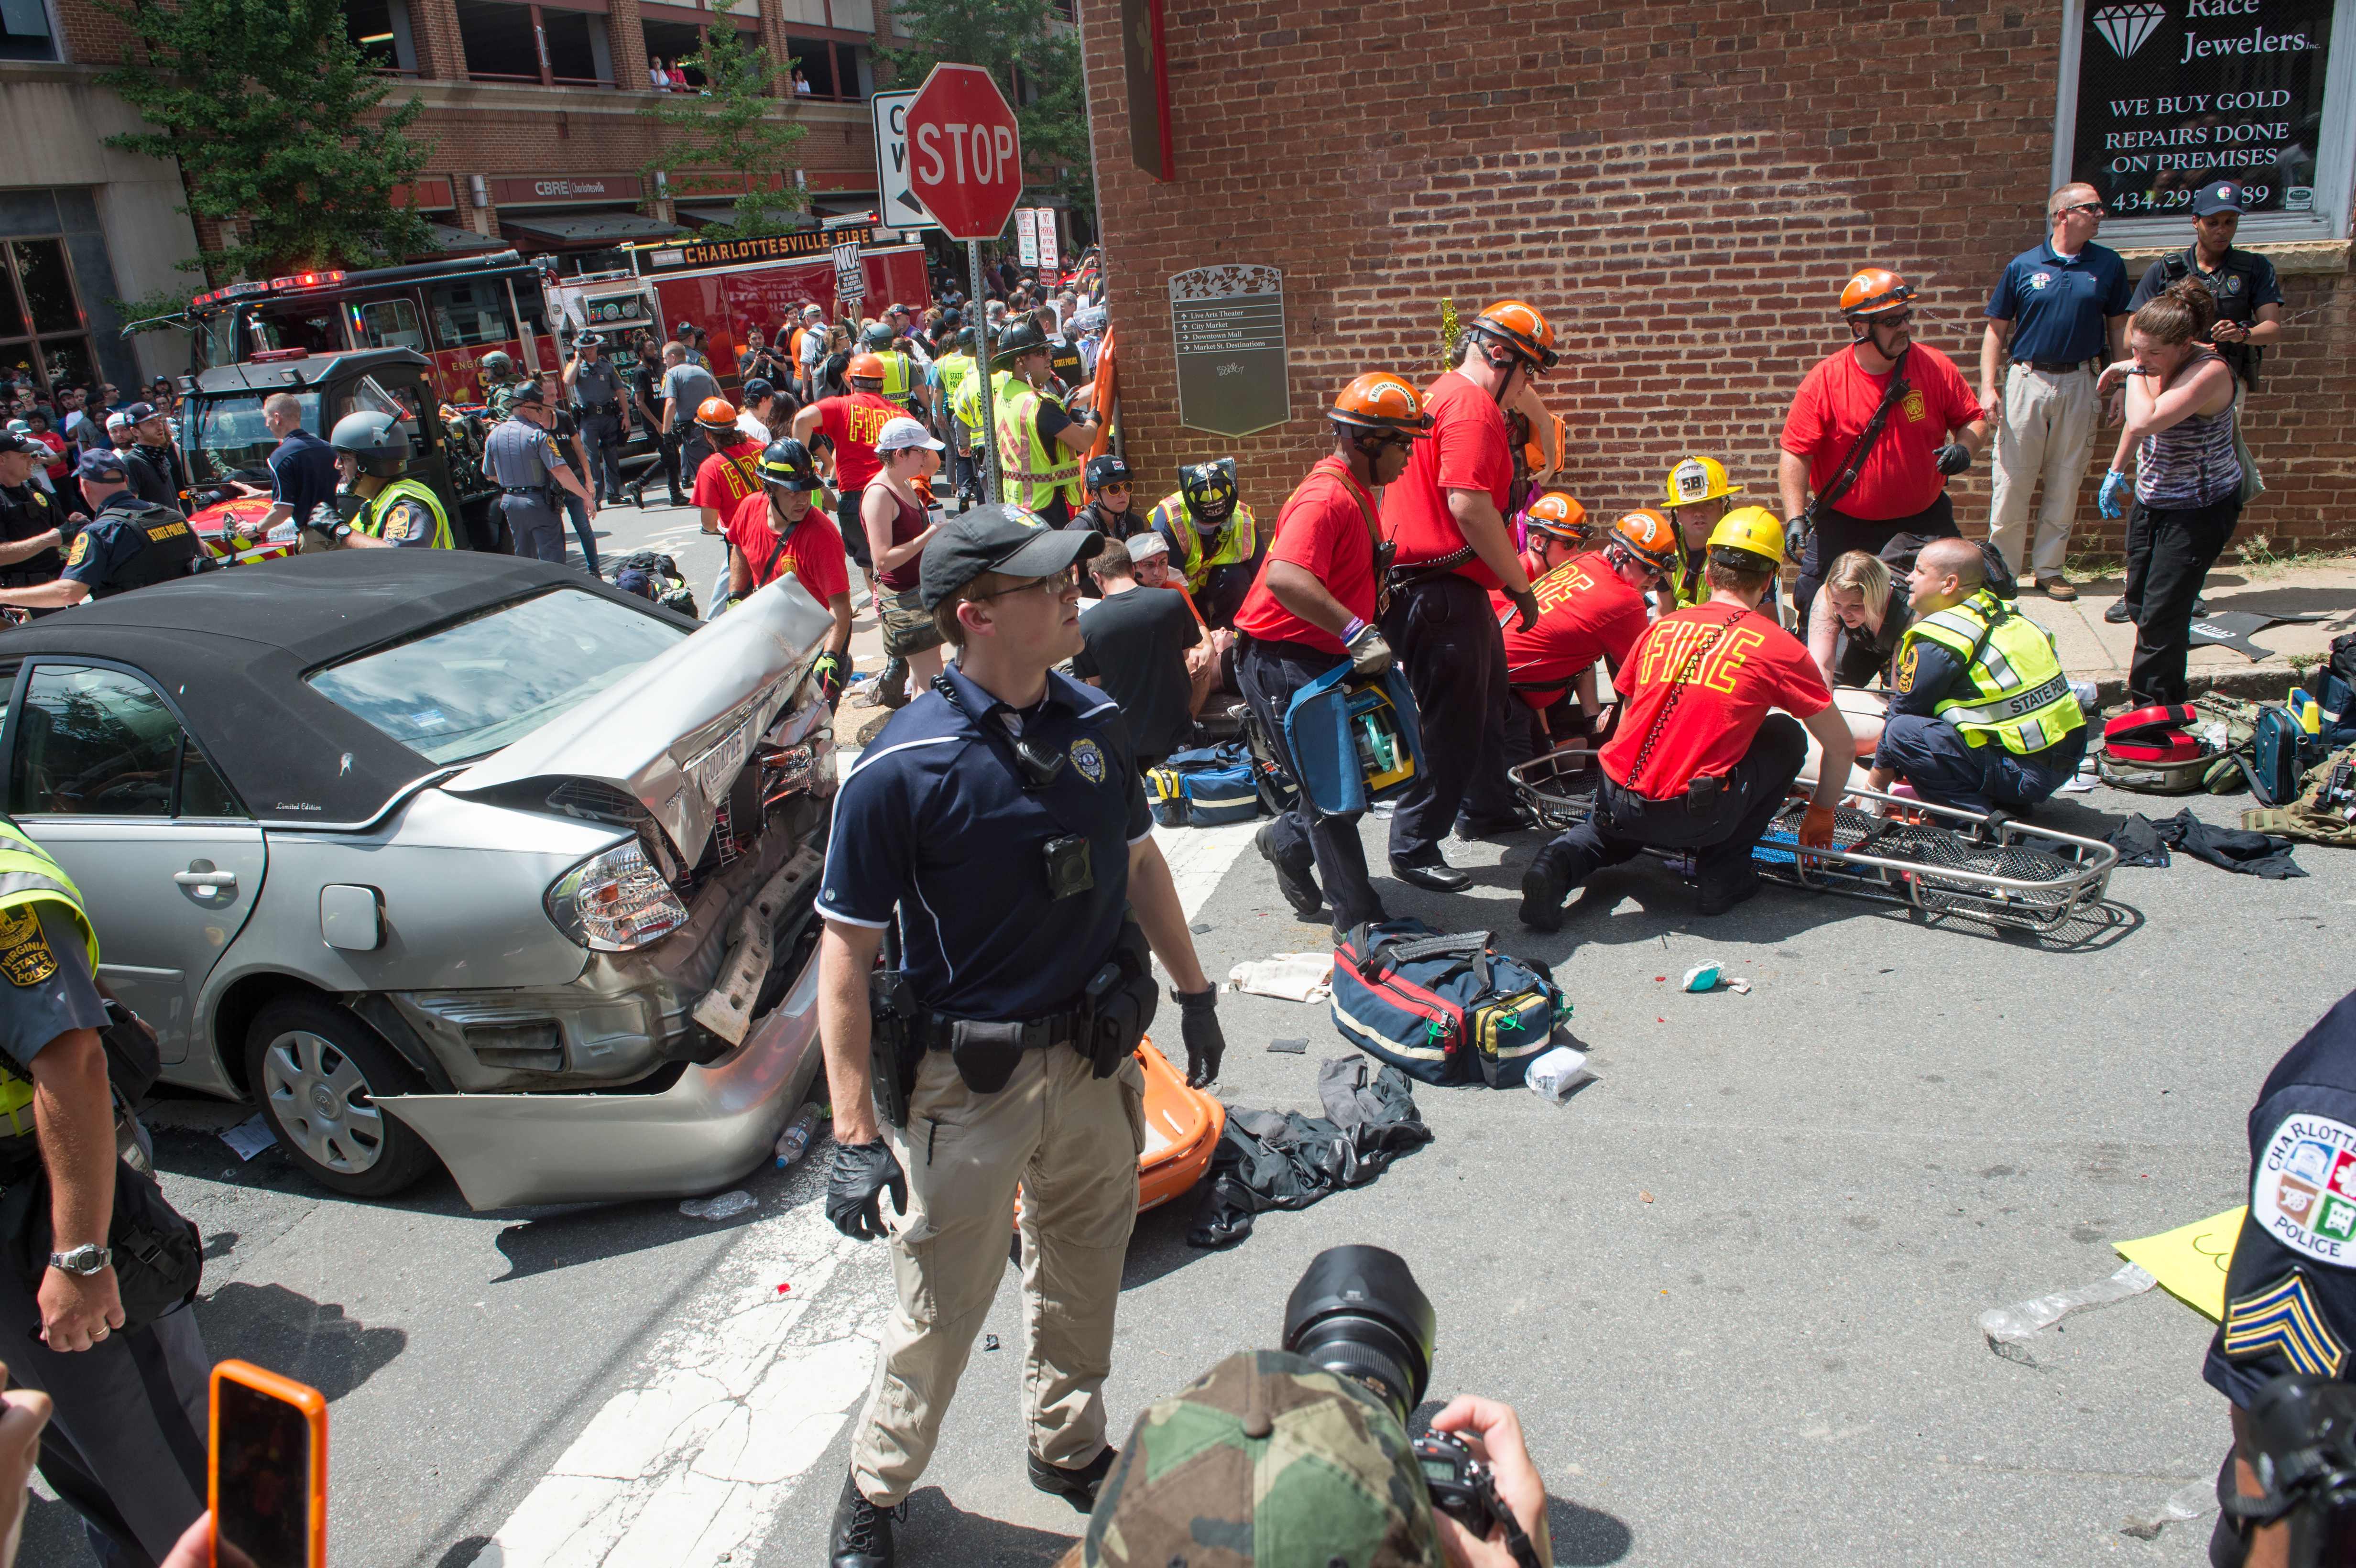 Video. Reportan accidente vial en marcha supremacista en Charlottesville